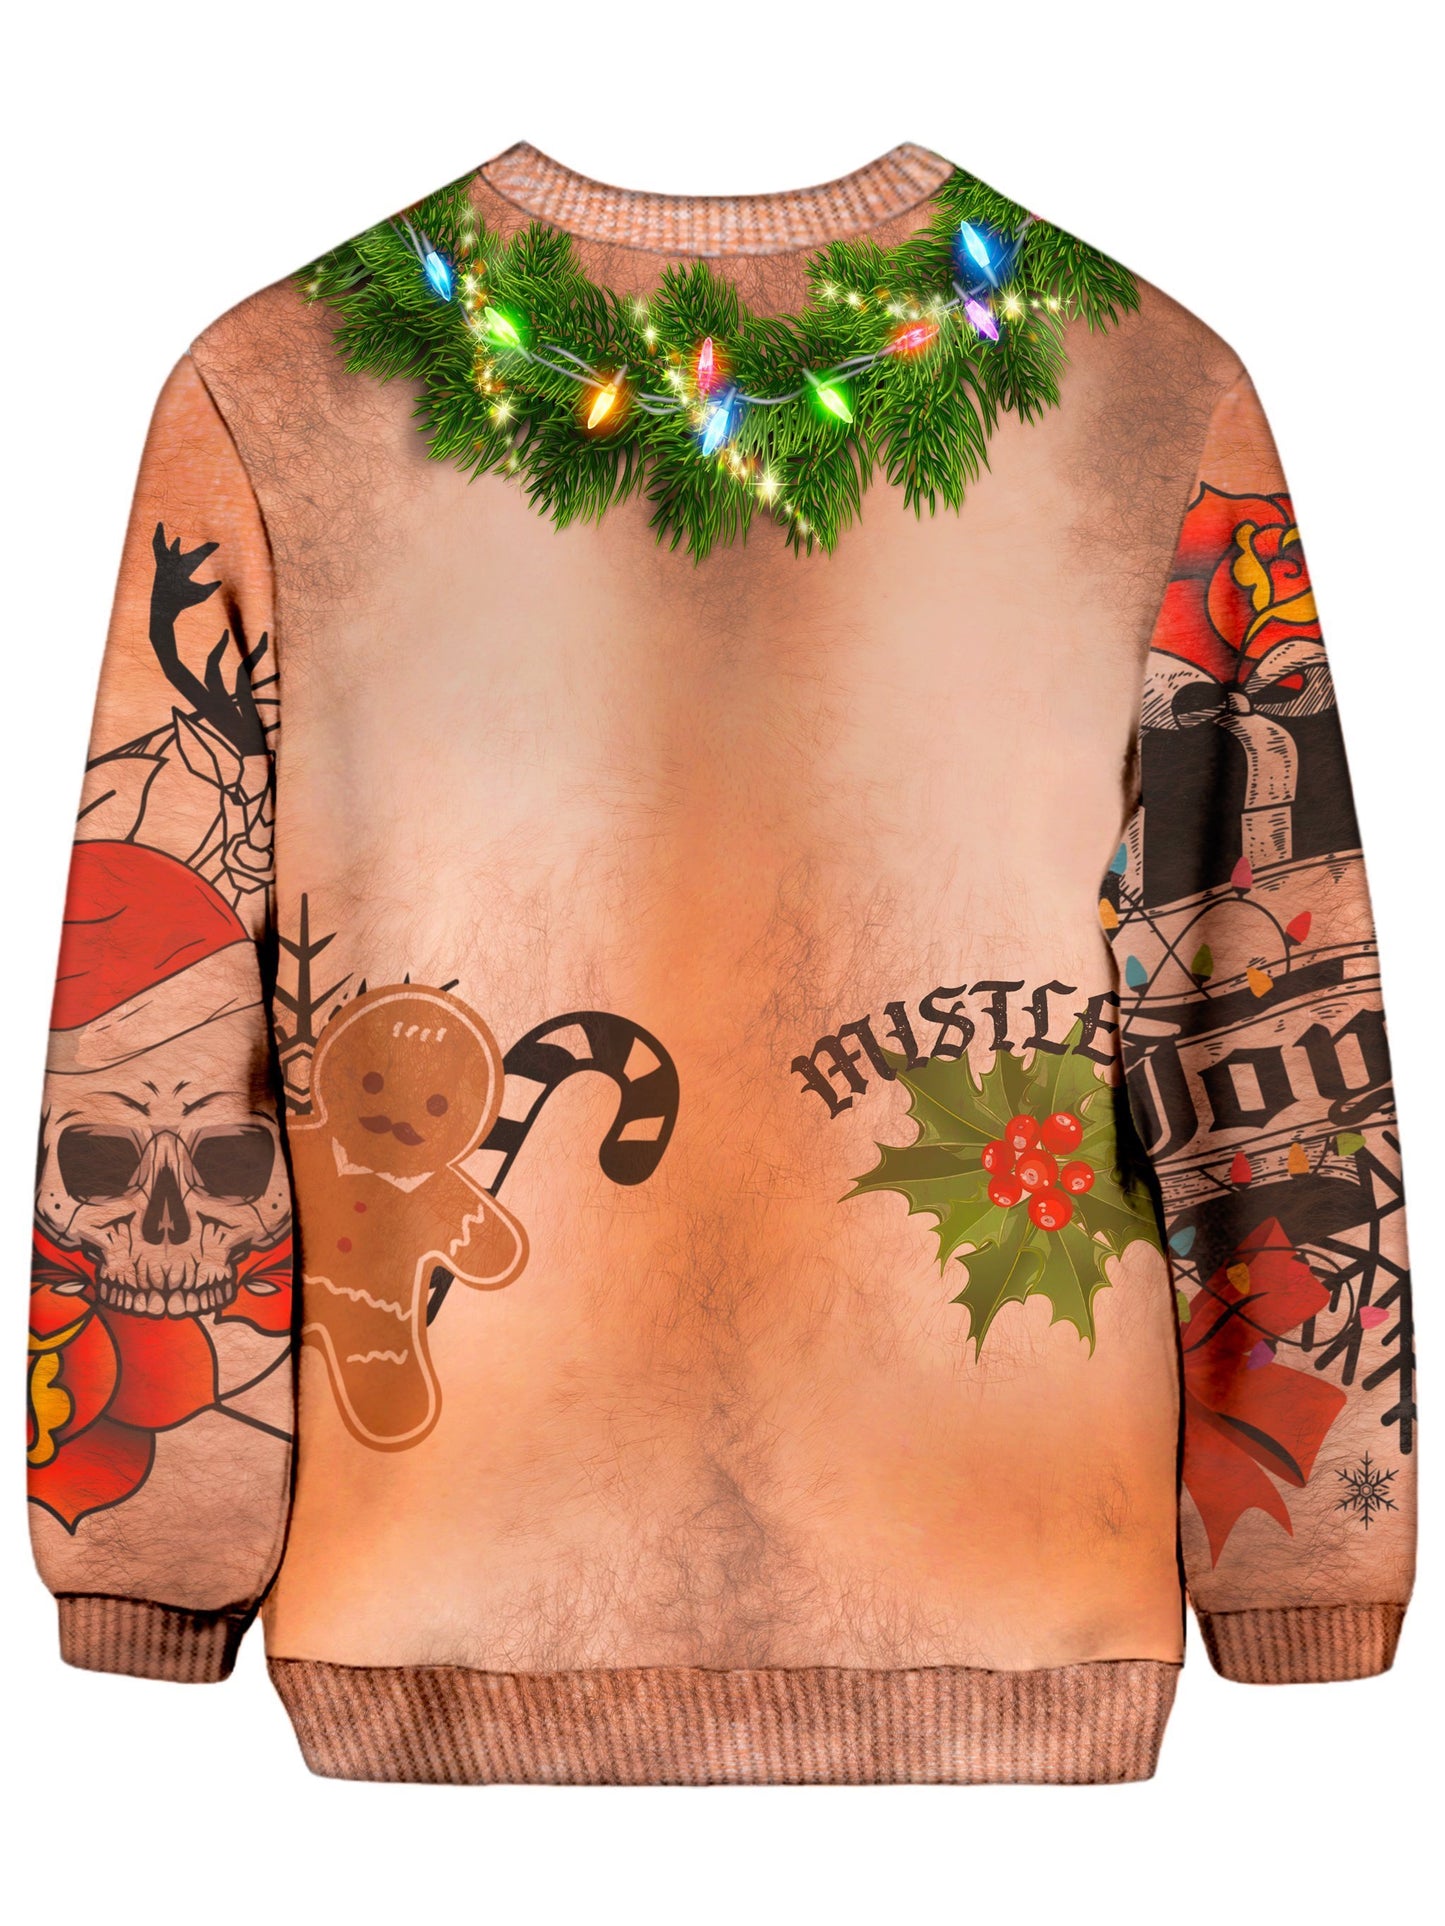 iEDM Thug Life Ugly Christmas Sweatshirt - iEDM